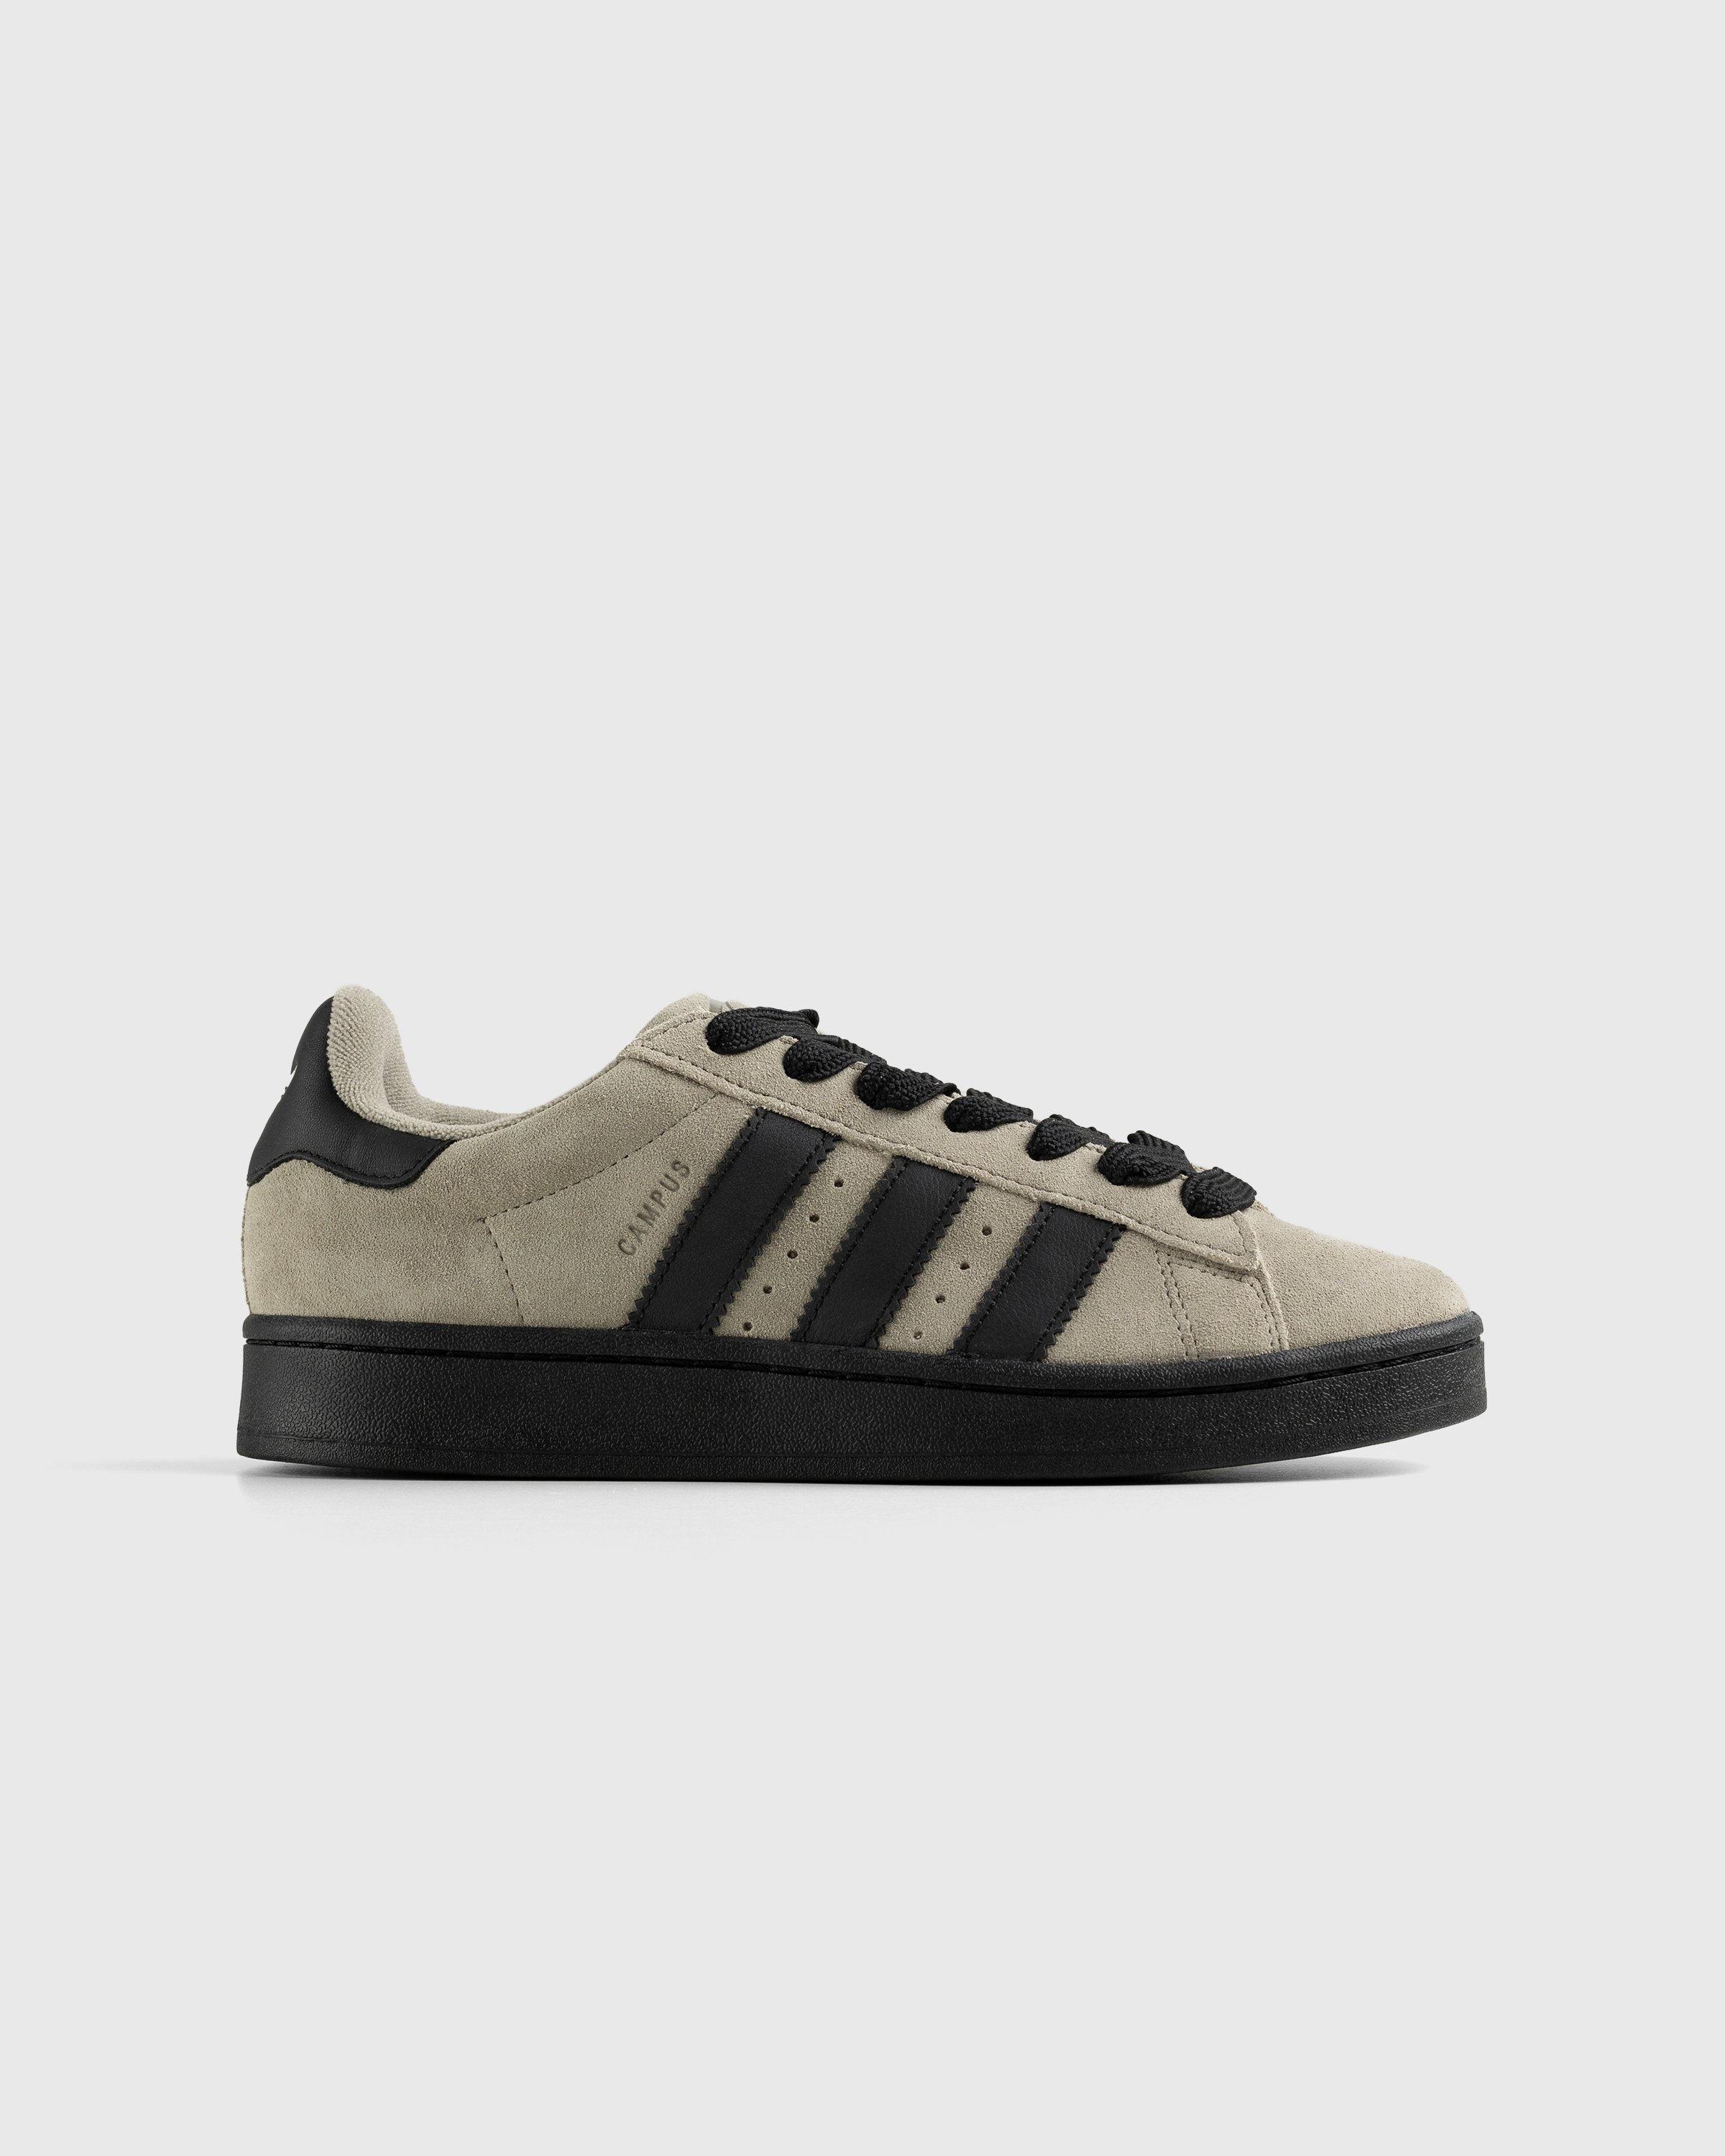 Adidas – Campus Grey/Black Highsnobiety Shop